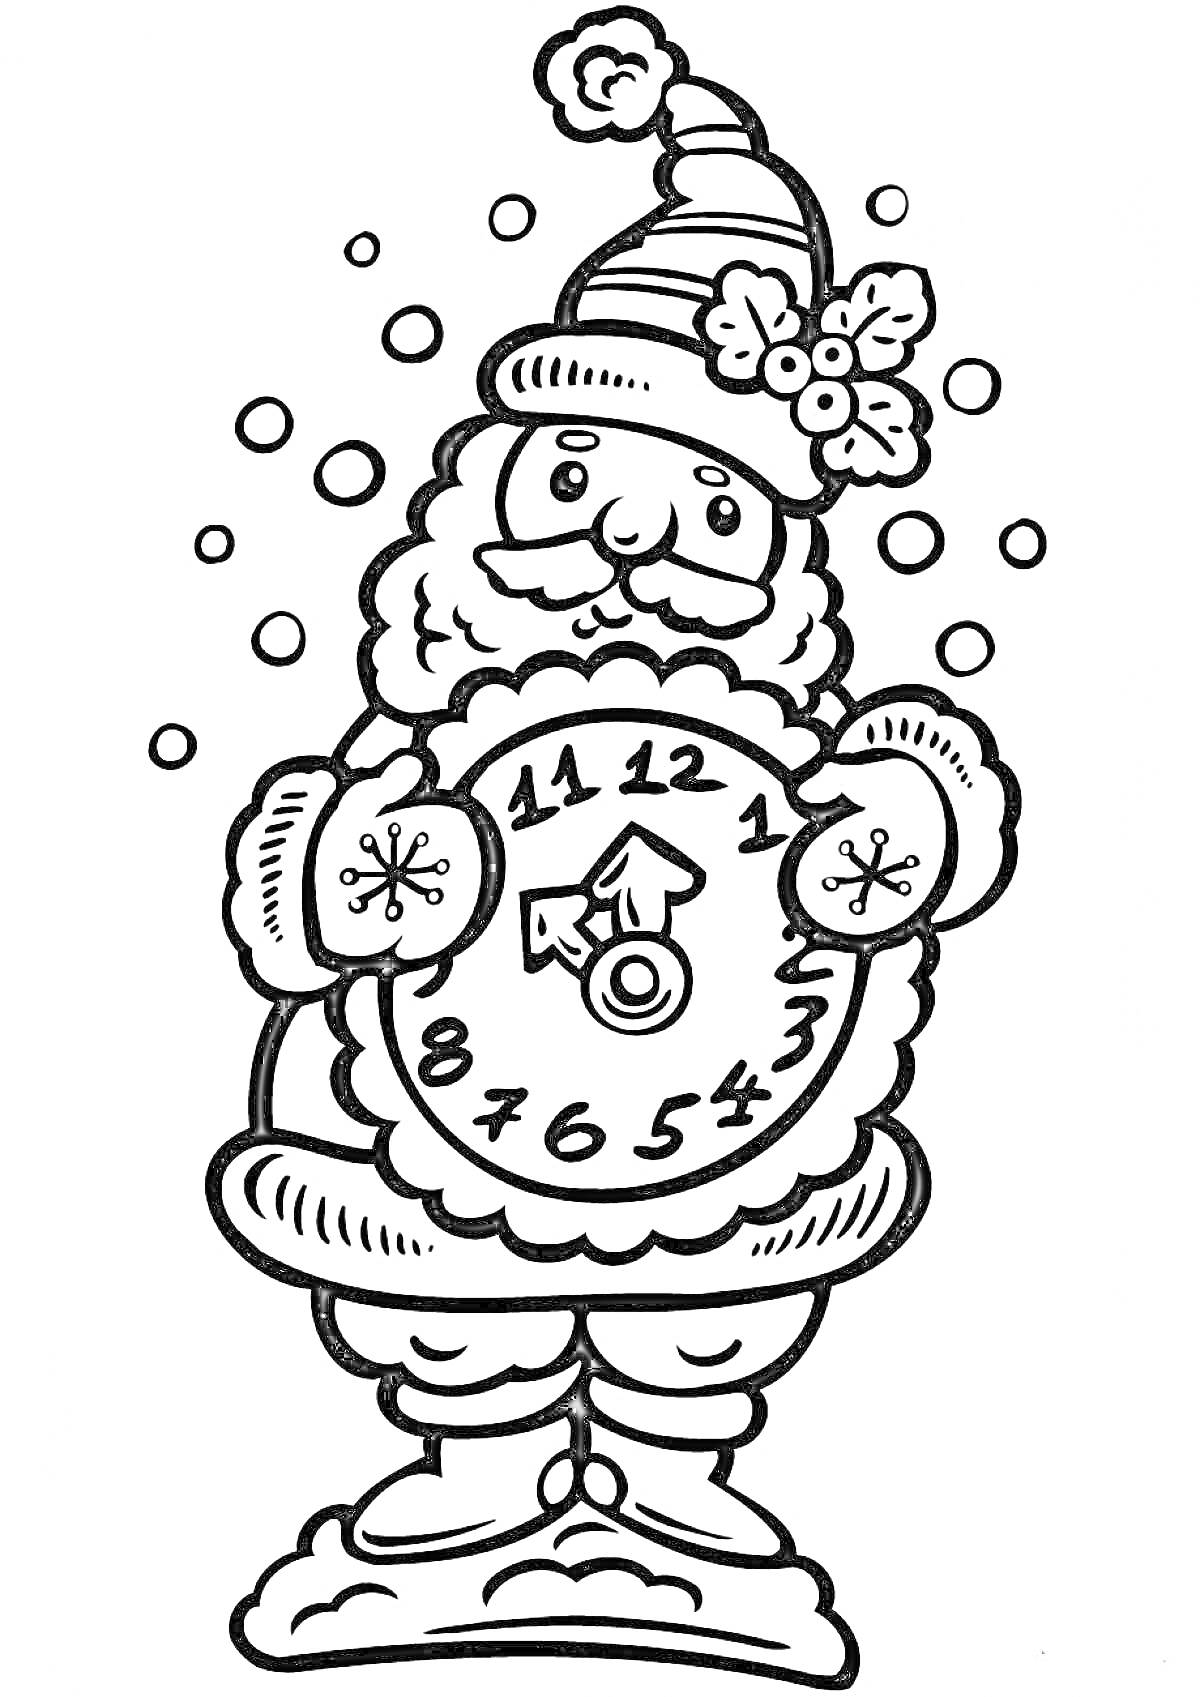 Раскраска Дед Мороз с часами, снежинки, шапка с бубоном и веточкой остролиста, крупные пуговицы, падающий снег